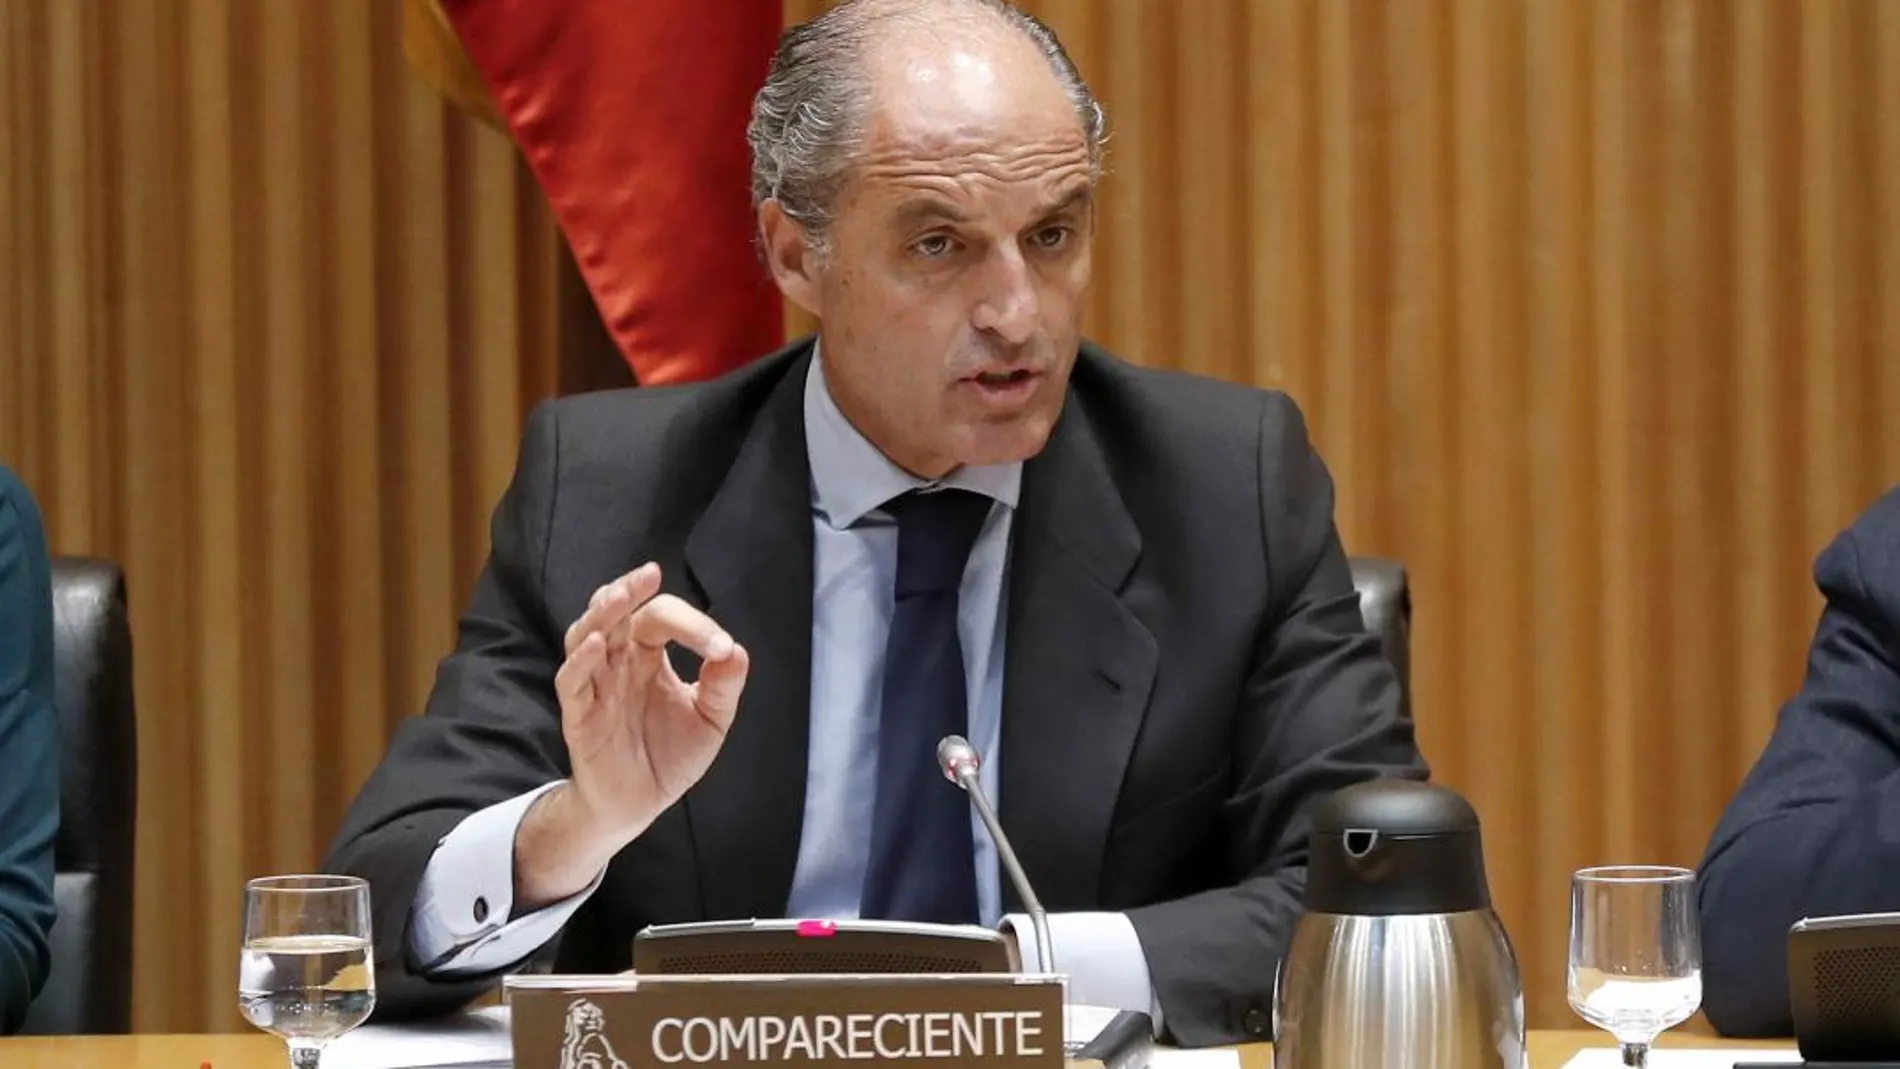 El expresidente de la Comunidad Valenciana Francisco Camps, durante su comparecencia ante la Comisión de Investigación sobre la presunta financiación ilegal del PP